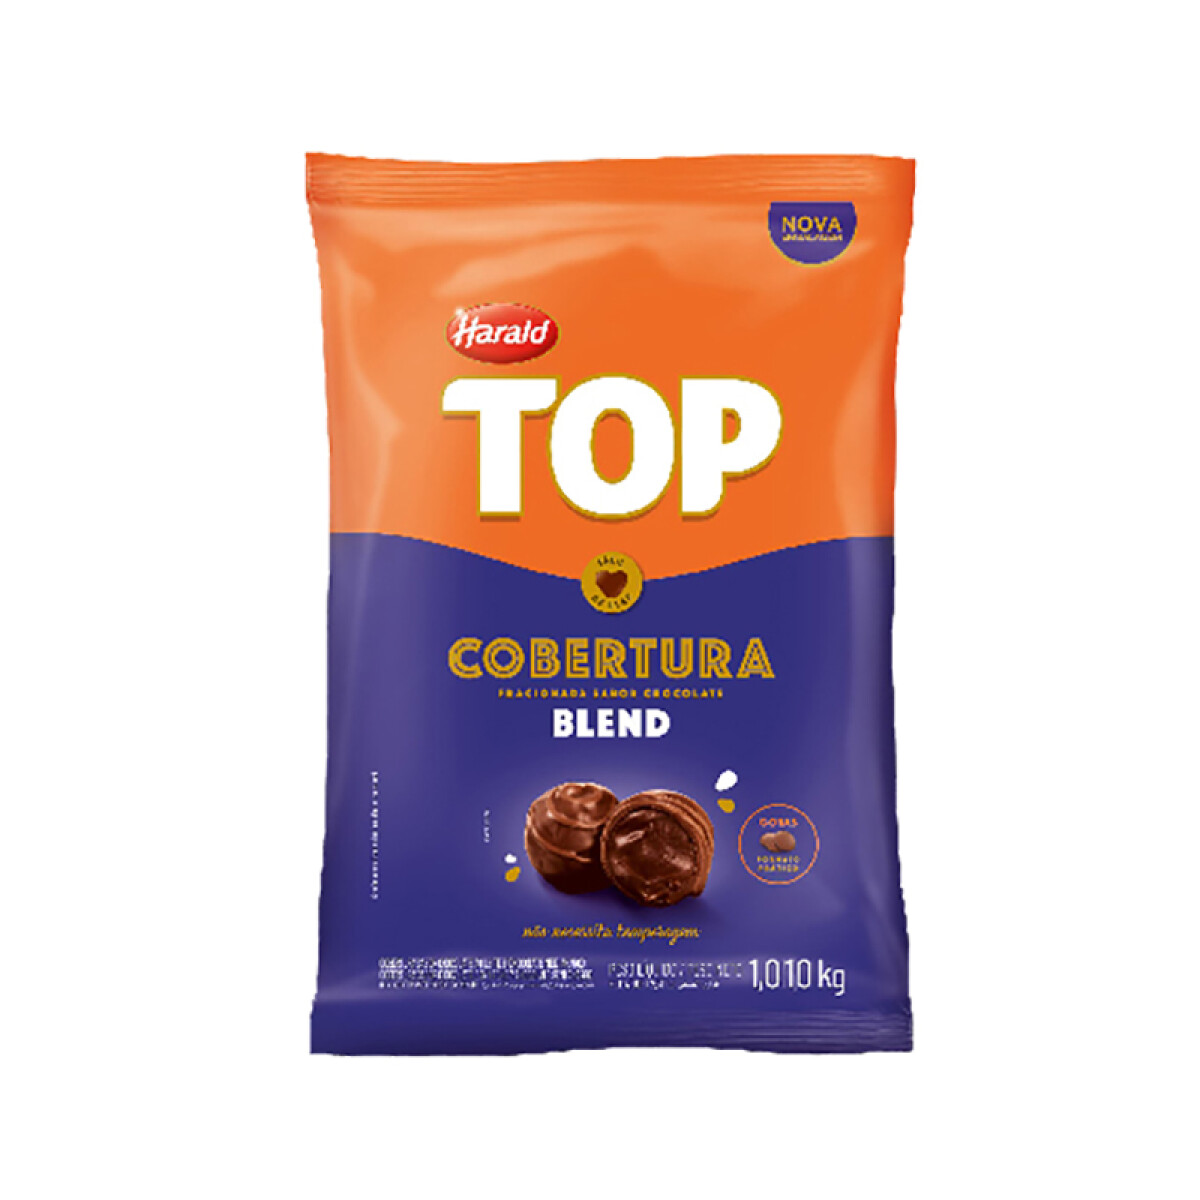 Cobertura TOP gotas - Blend 1,010 kg 